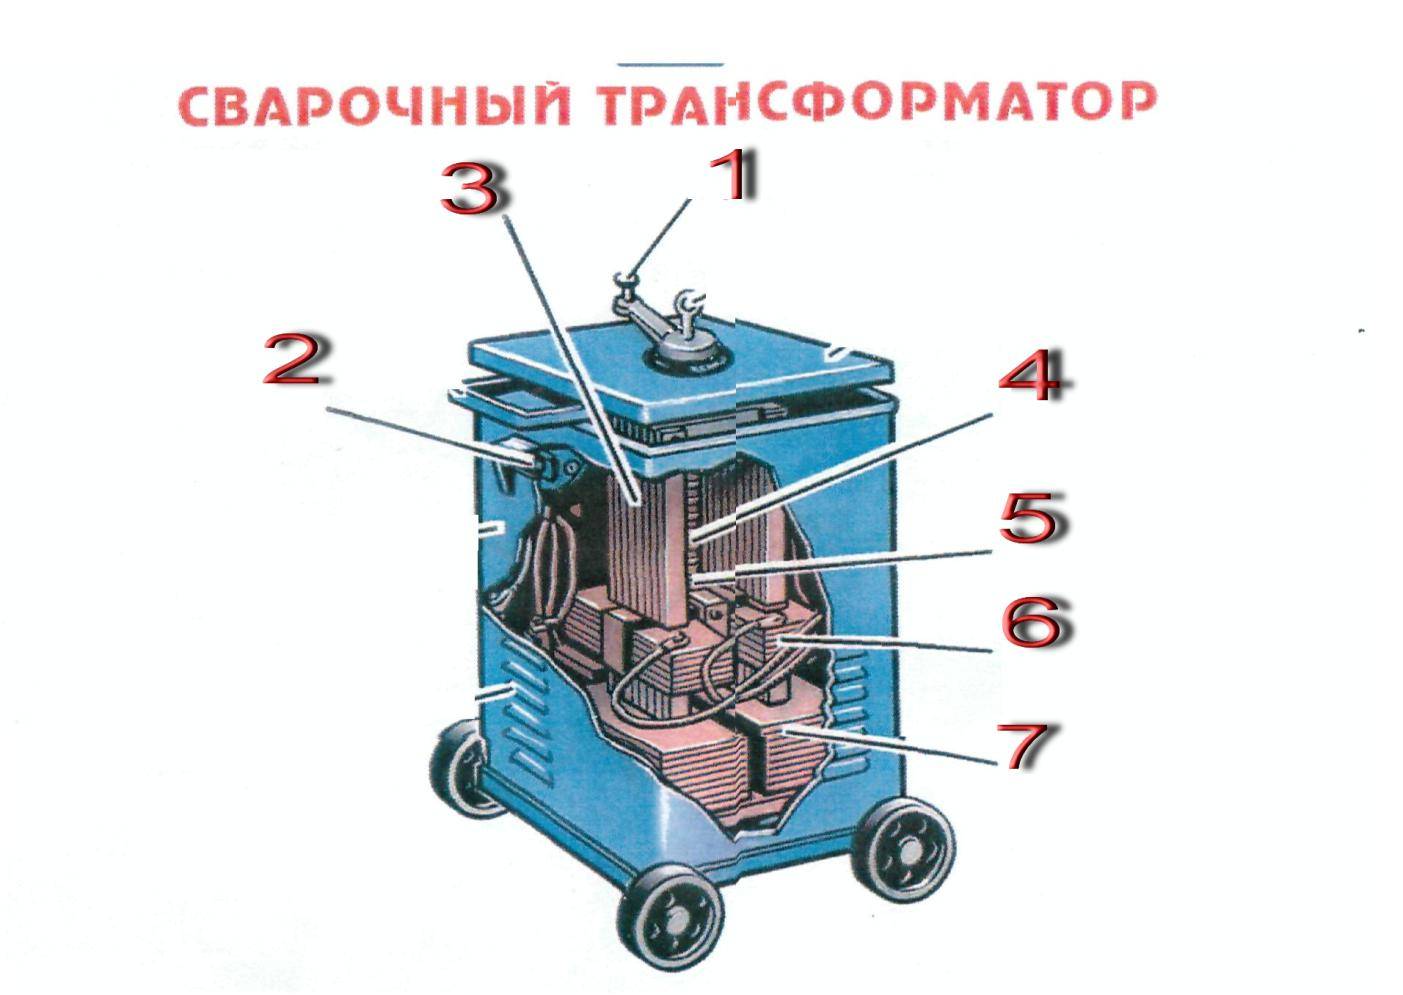 Сварочный трансформатор - устройство, принцип работы и виды